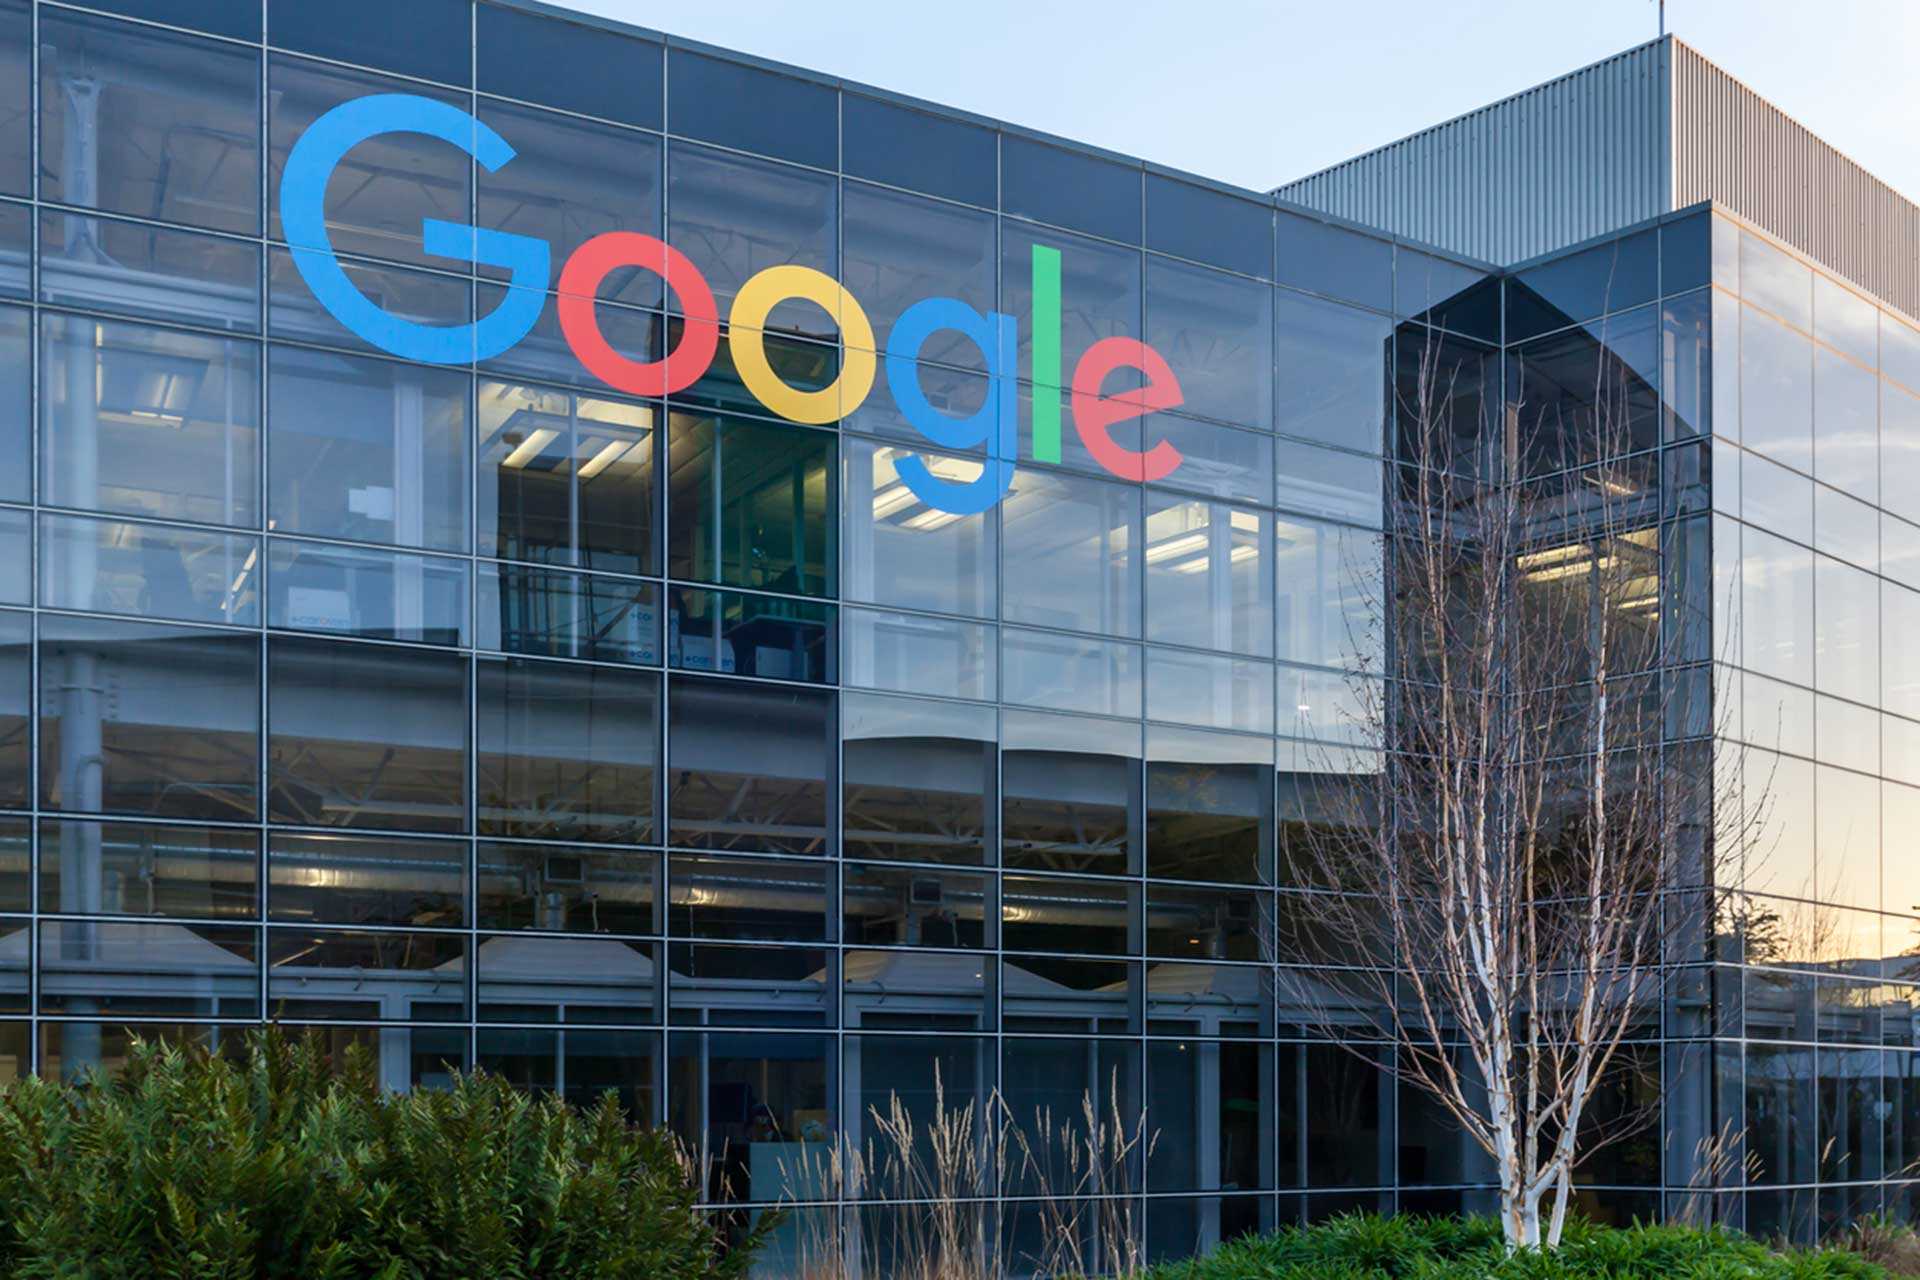 Google er bandarískt fyrirtæki sem býður upp á netþjónustu, með höfuðstöðvar í Mountain View í Kaliforníu í svokölluðu Googleplex